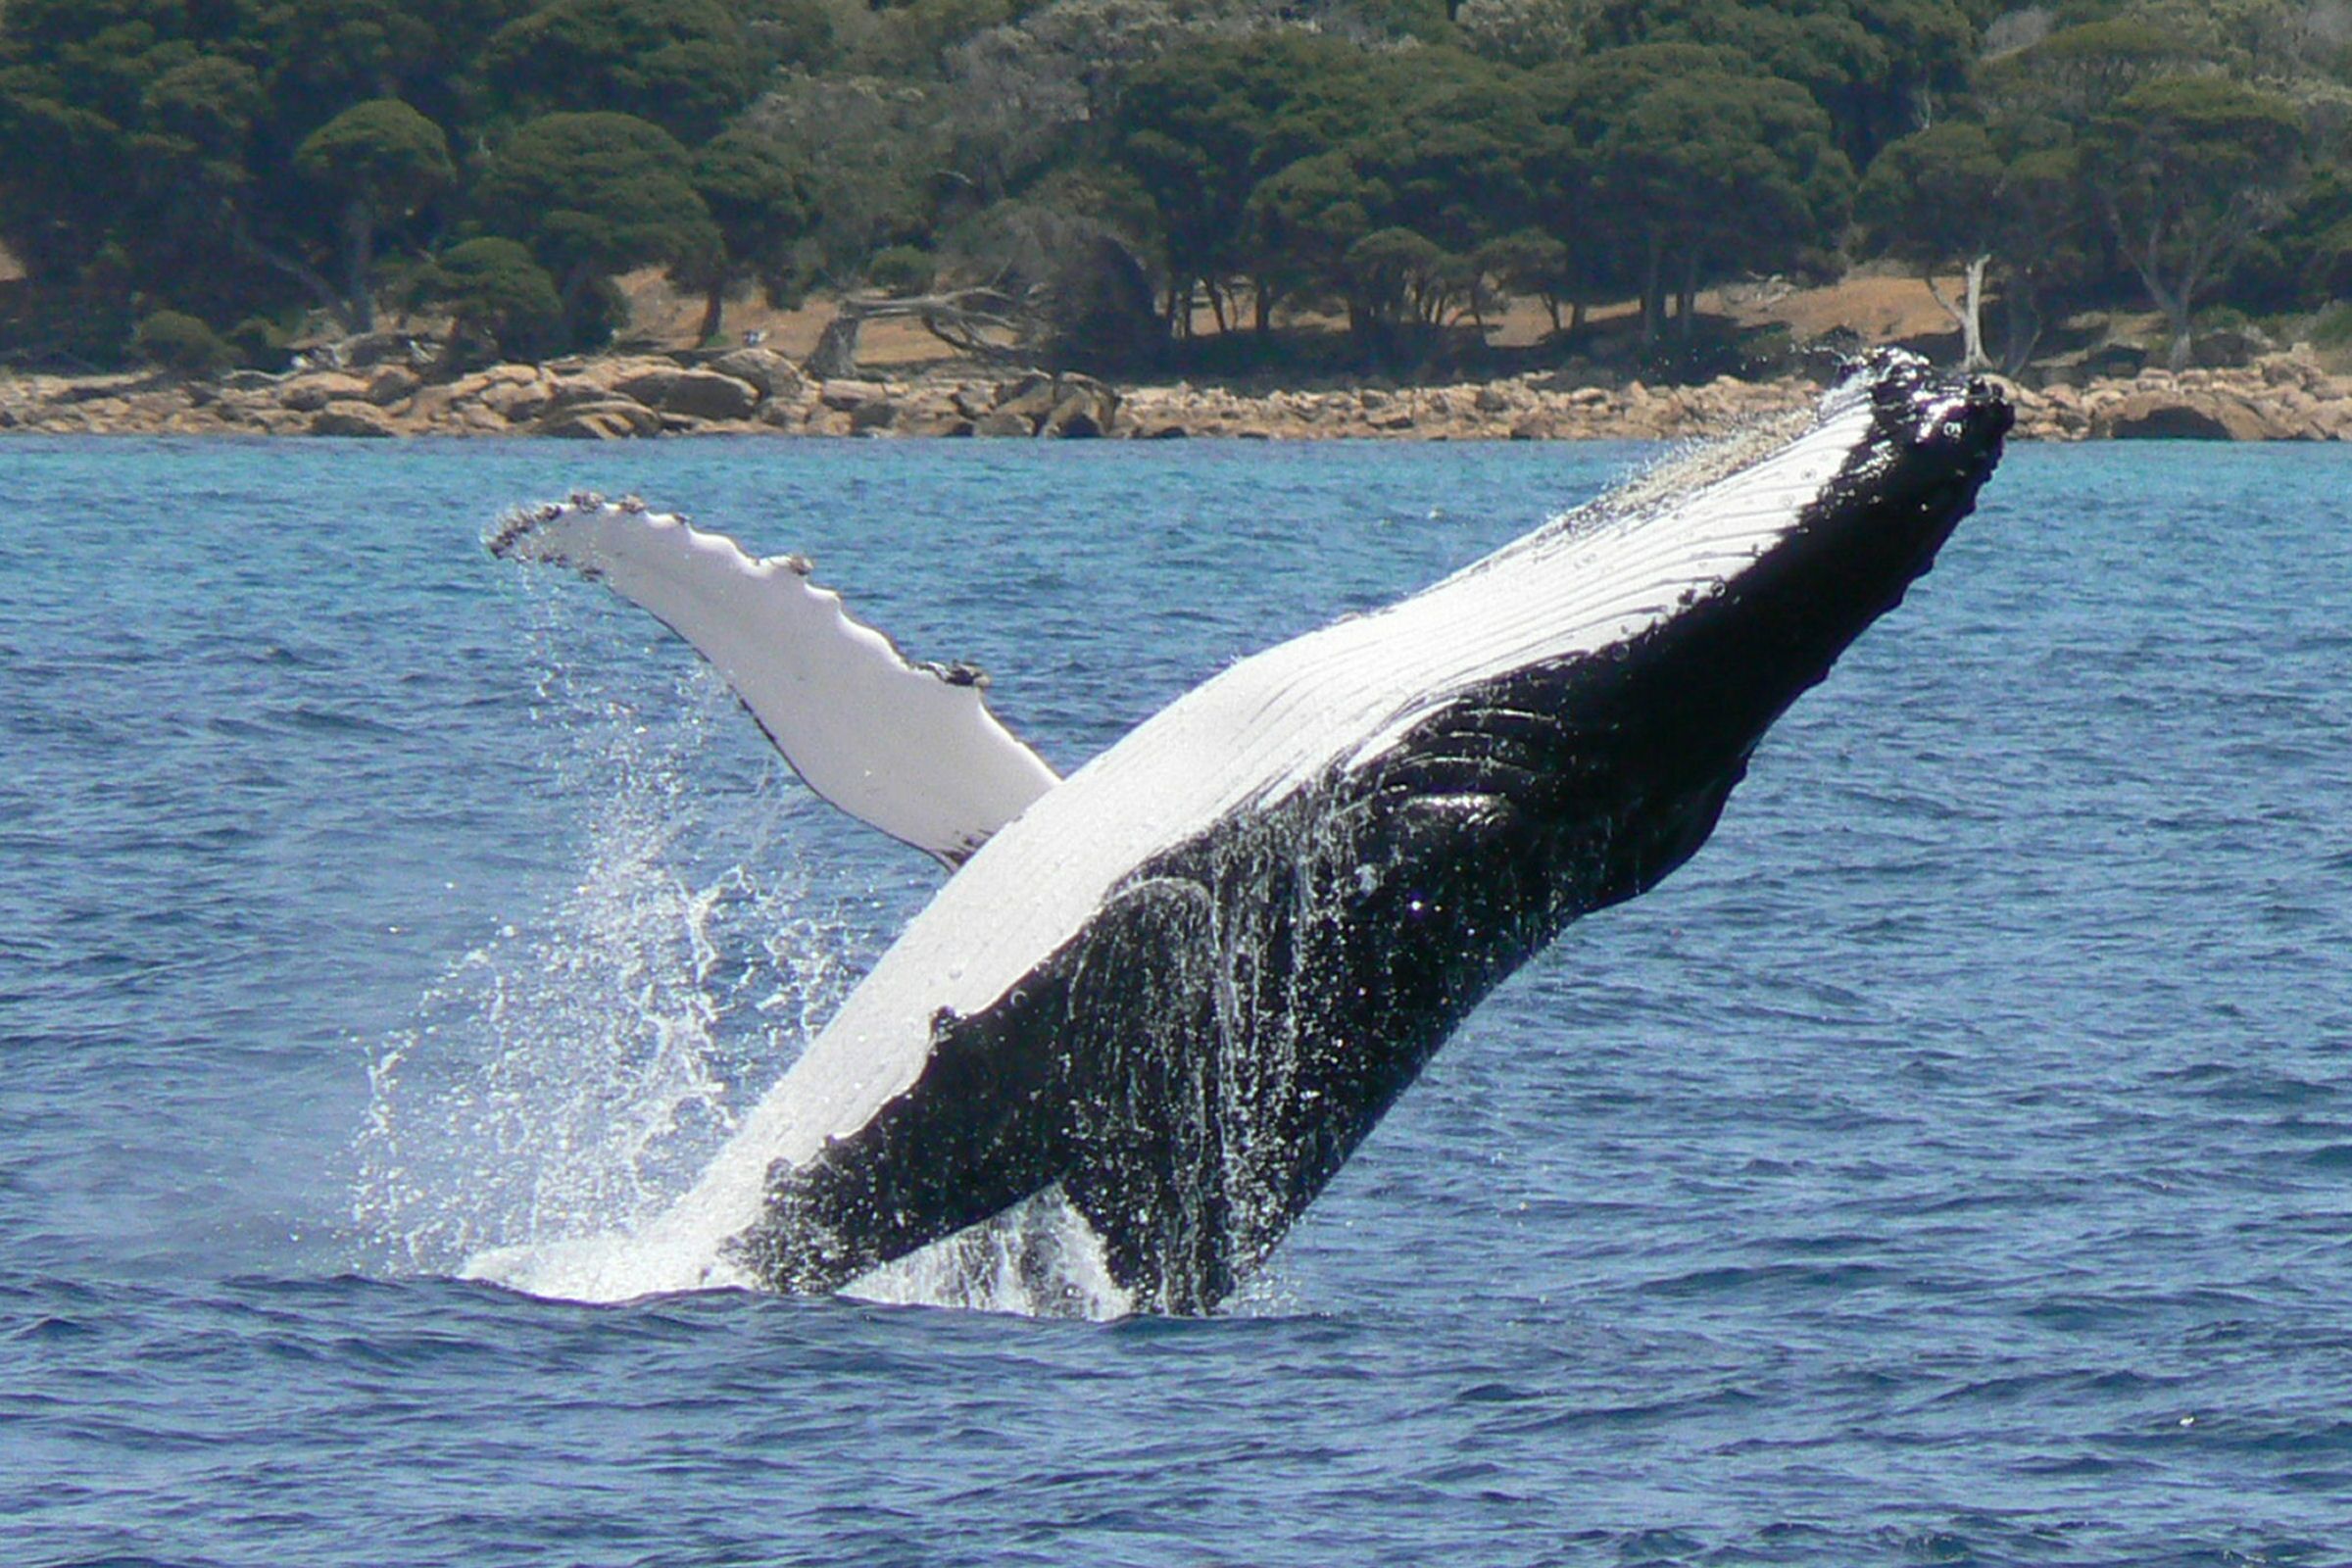 Hump back whale breaching backwards